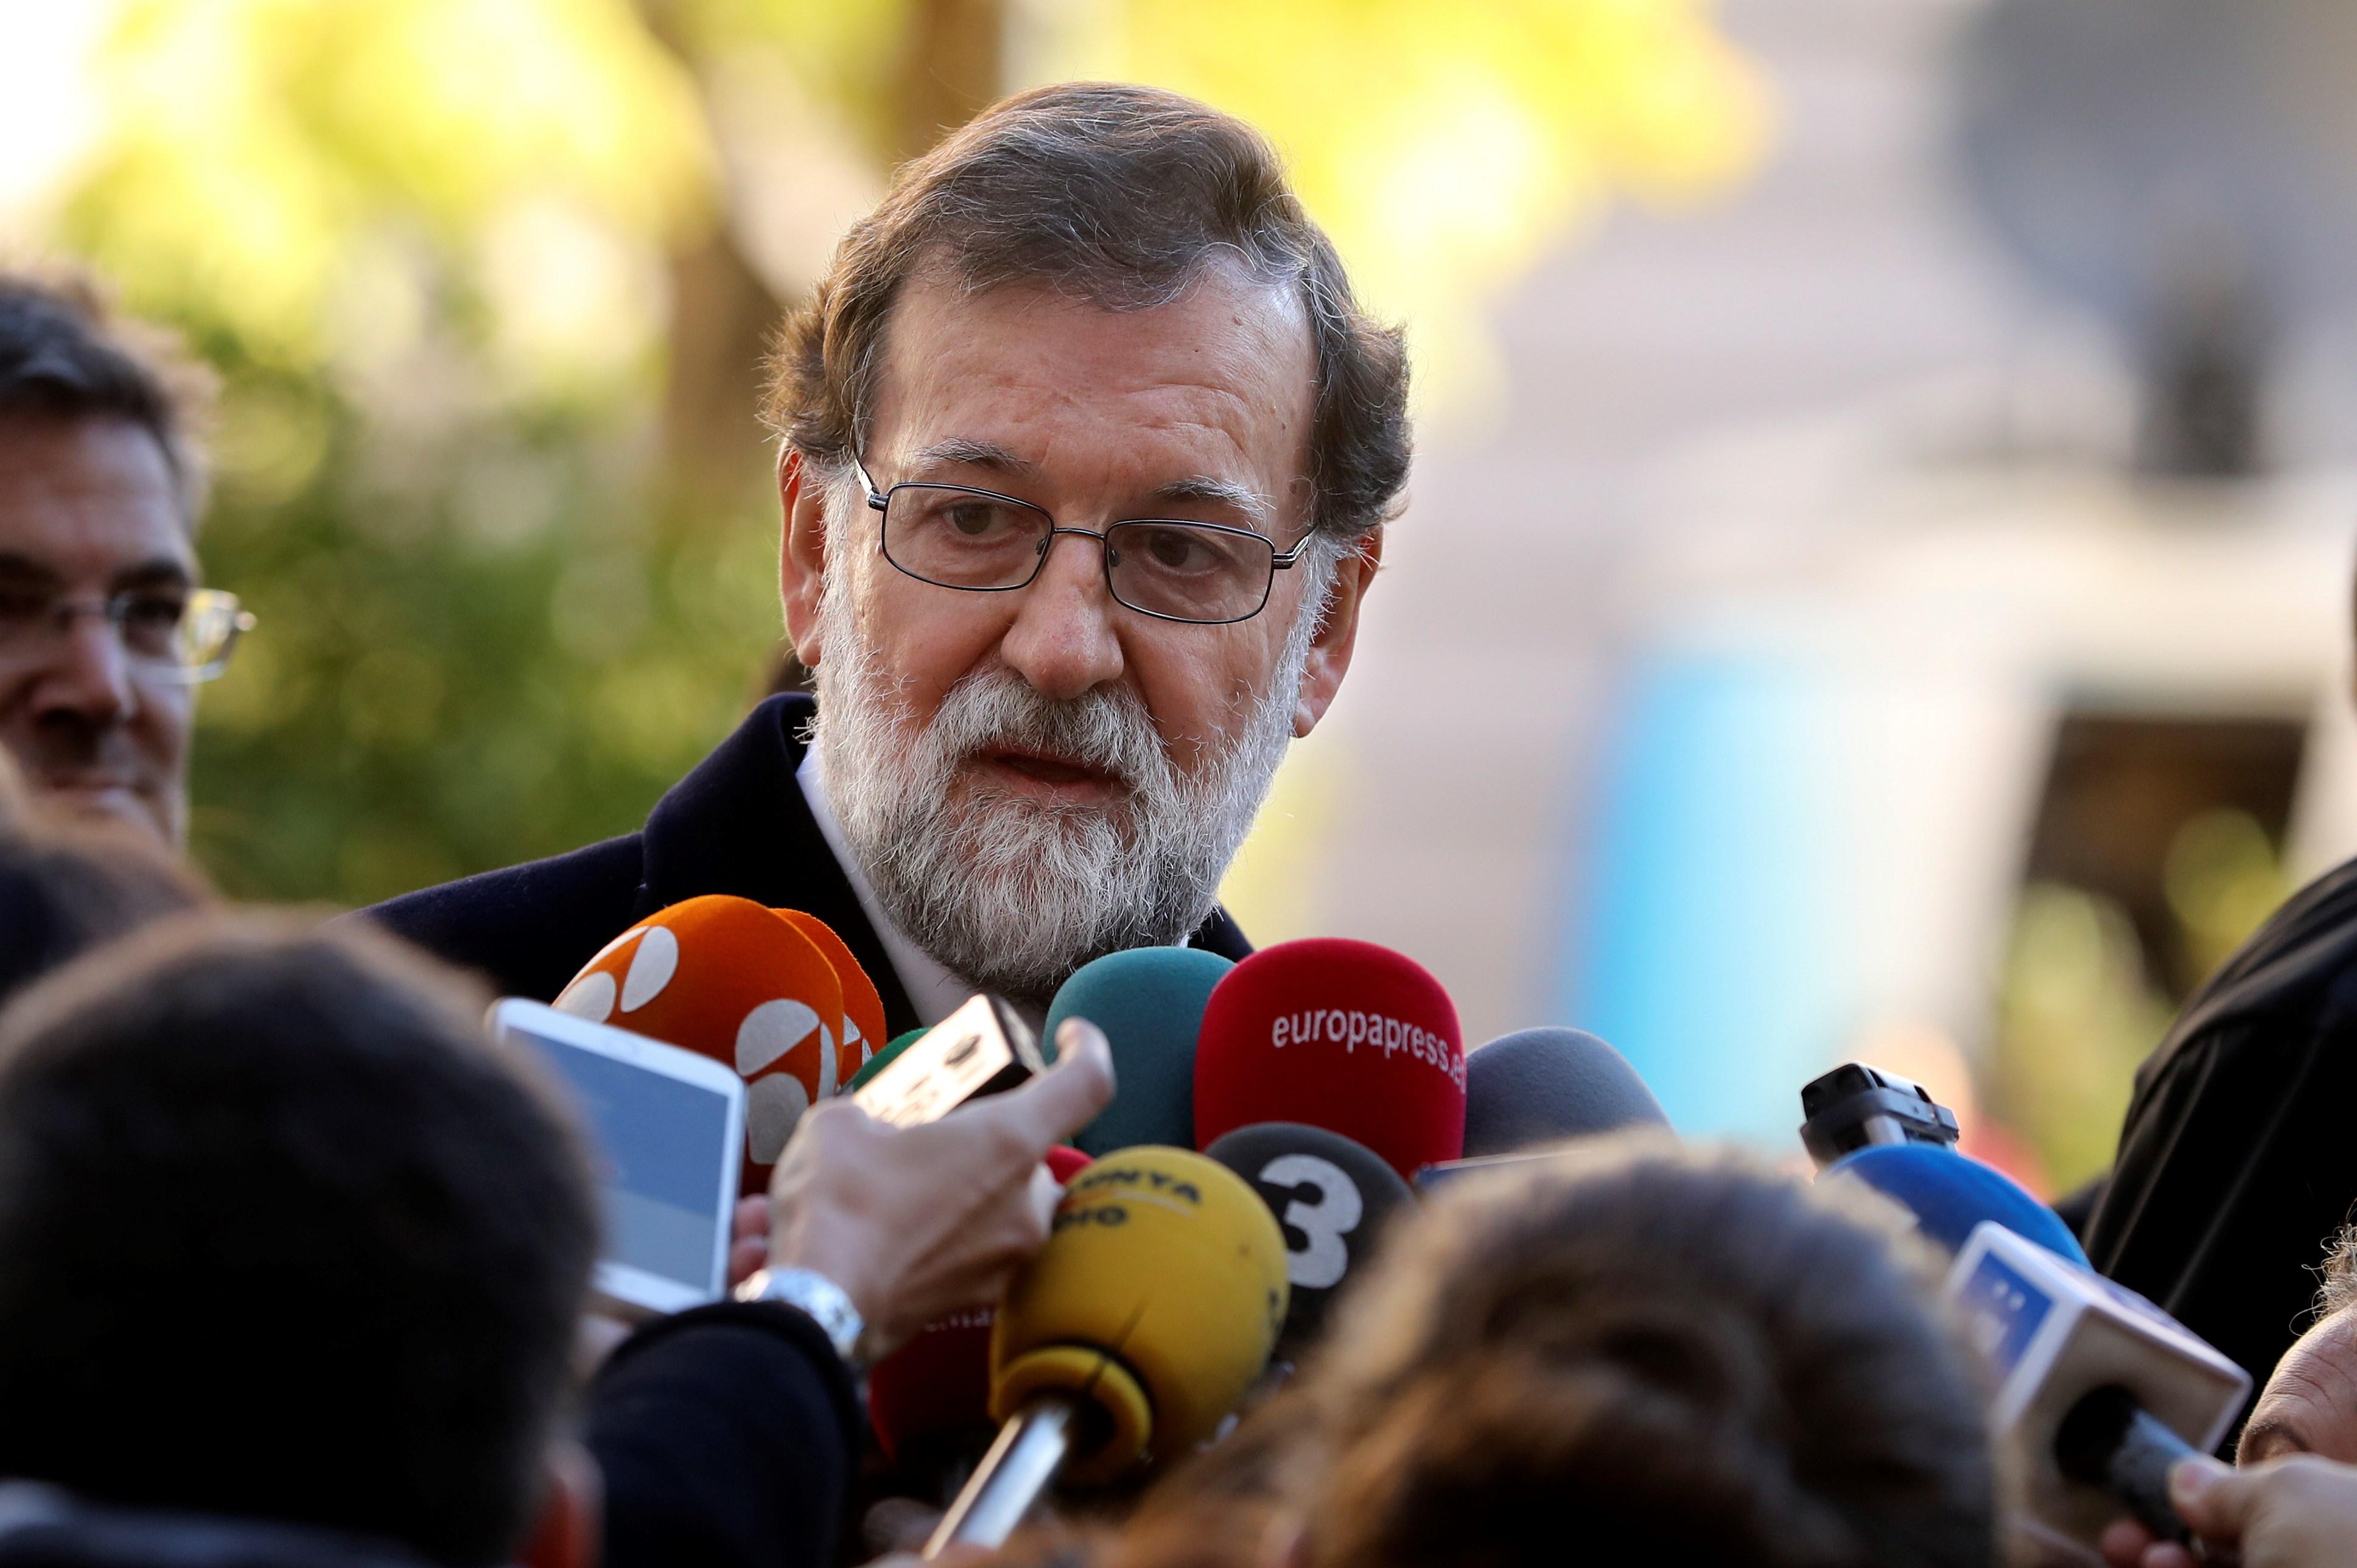 Rajoy promete diálogo "con todos" tras las elecciones en Cataluña